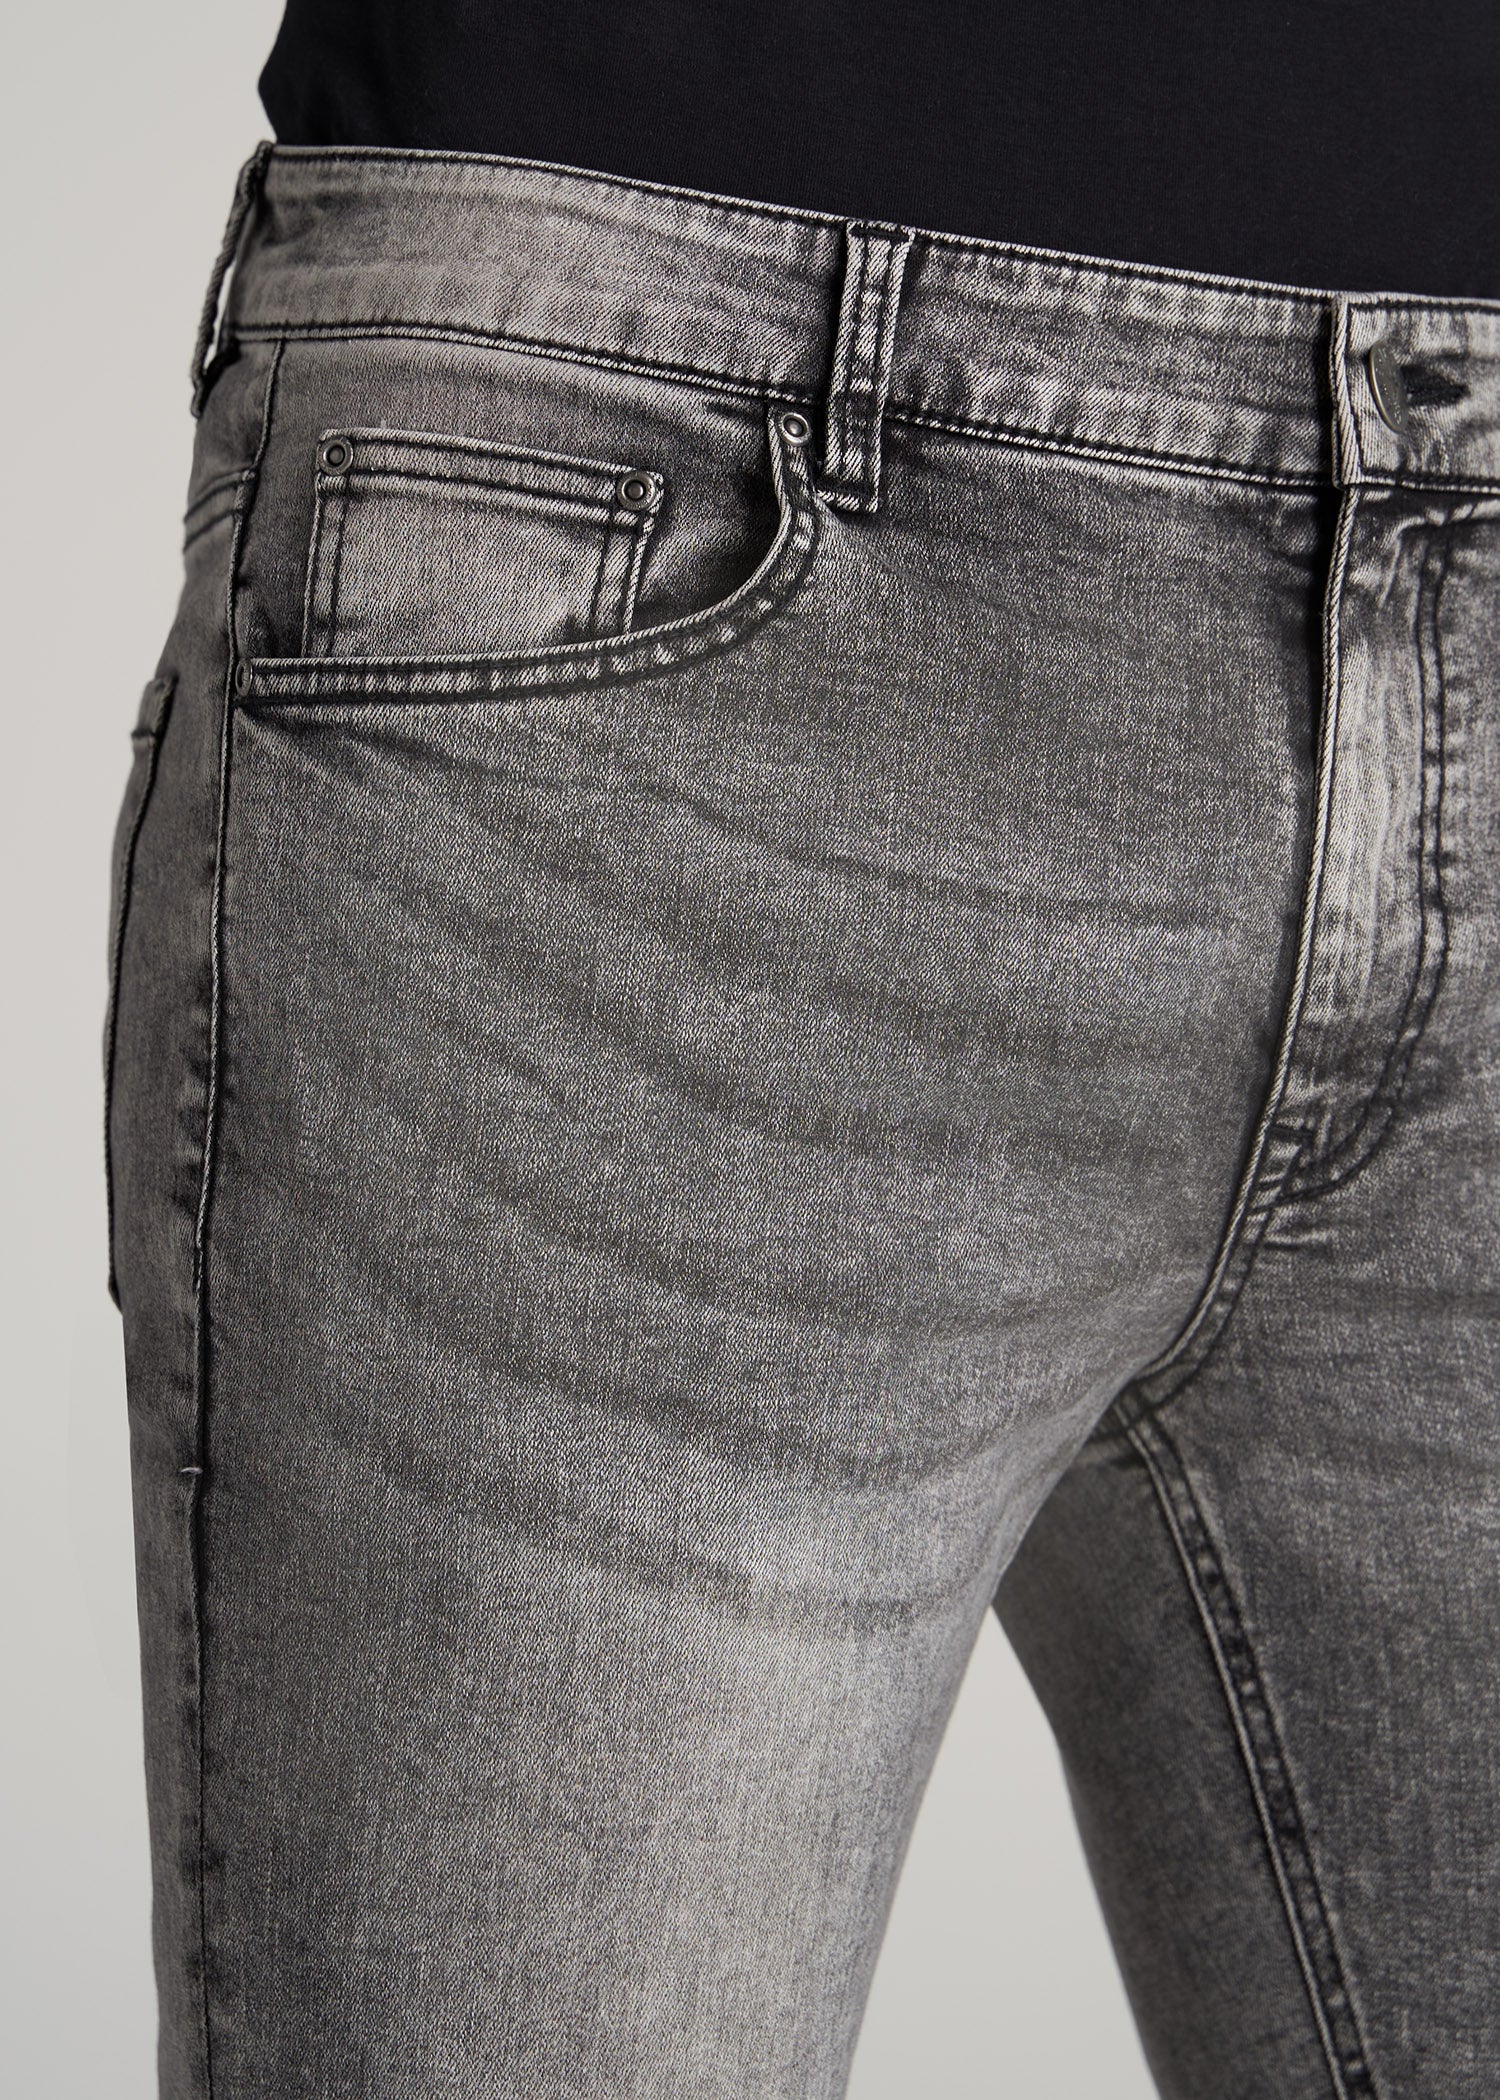 Black Faded Jeans Mens: Tall Travis Faded Black Skinny Jeans – American Tall